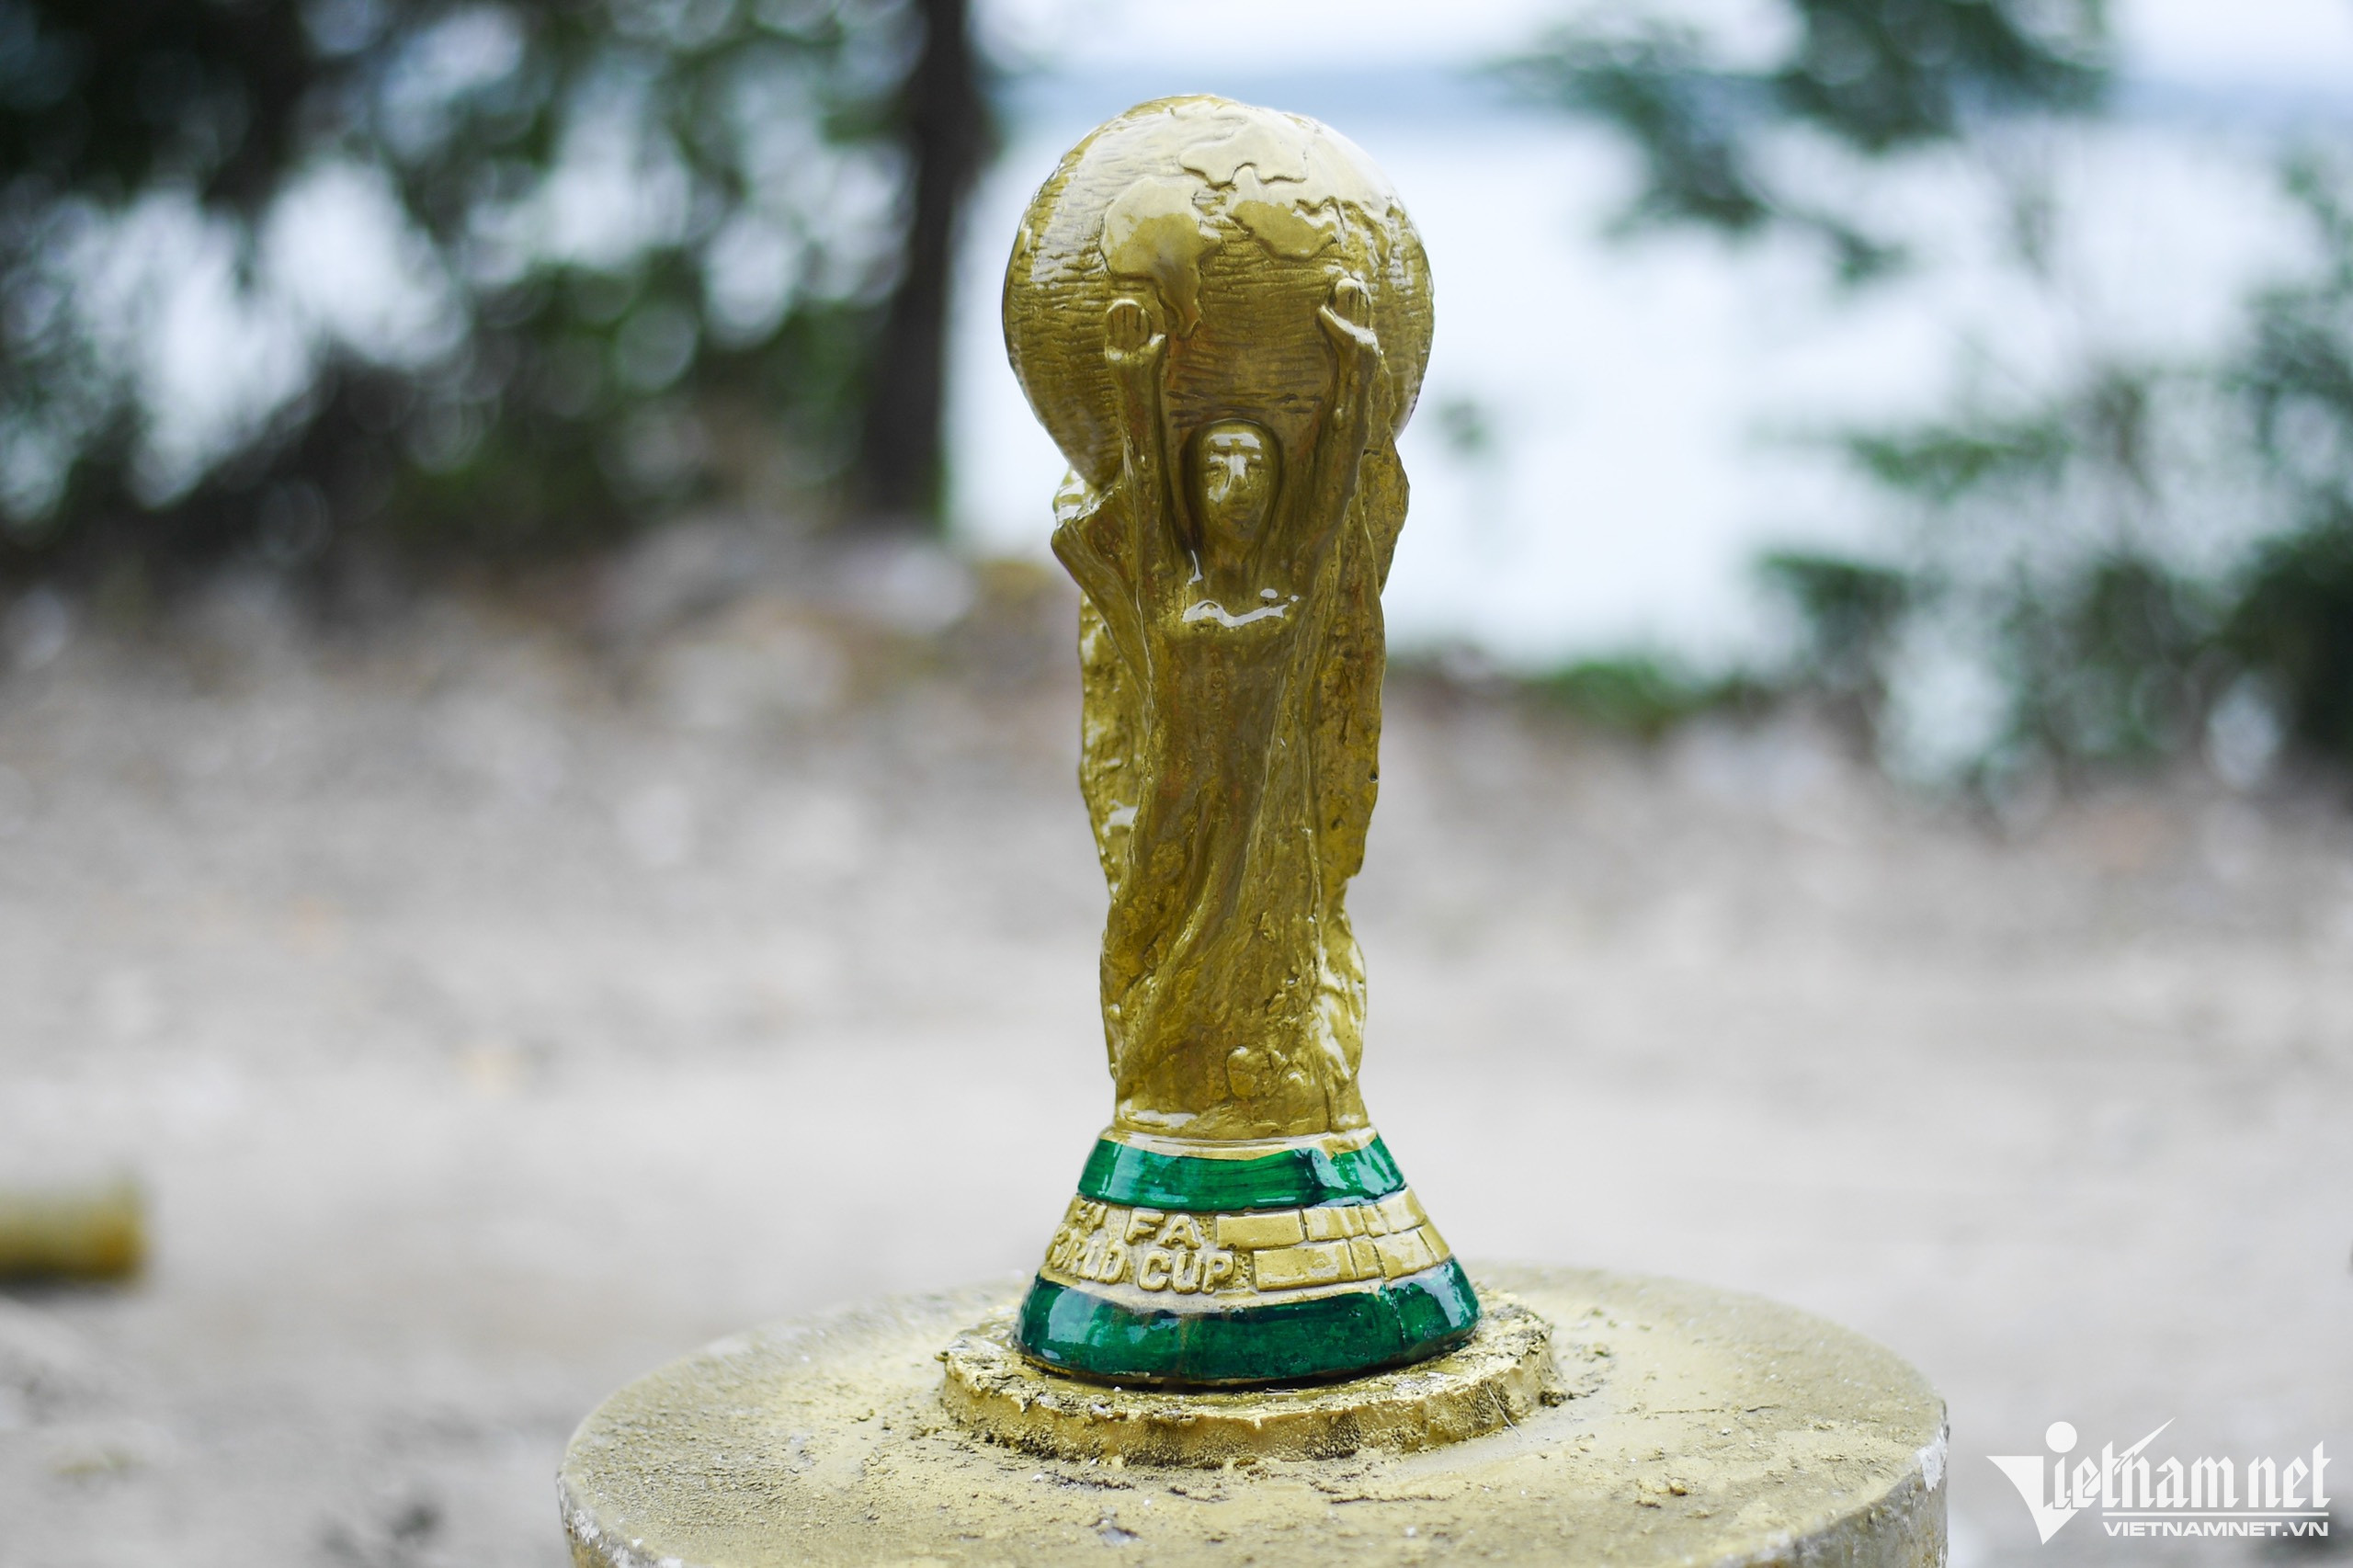 'Cup vàng thế giới' Qatar 2022 giá từ 70.000 đồng xuất hiện ở Hà Nội - Ảnh 6.